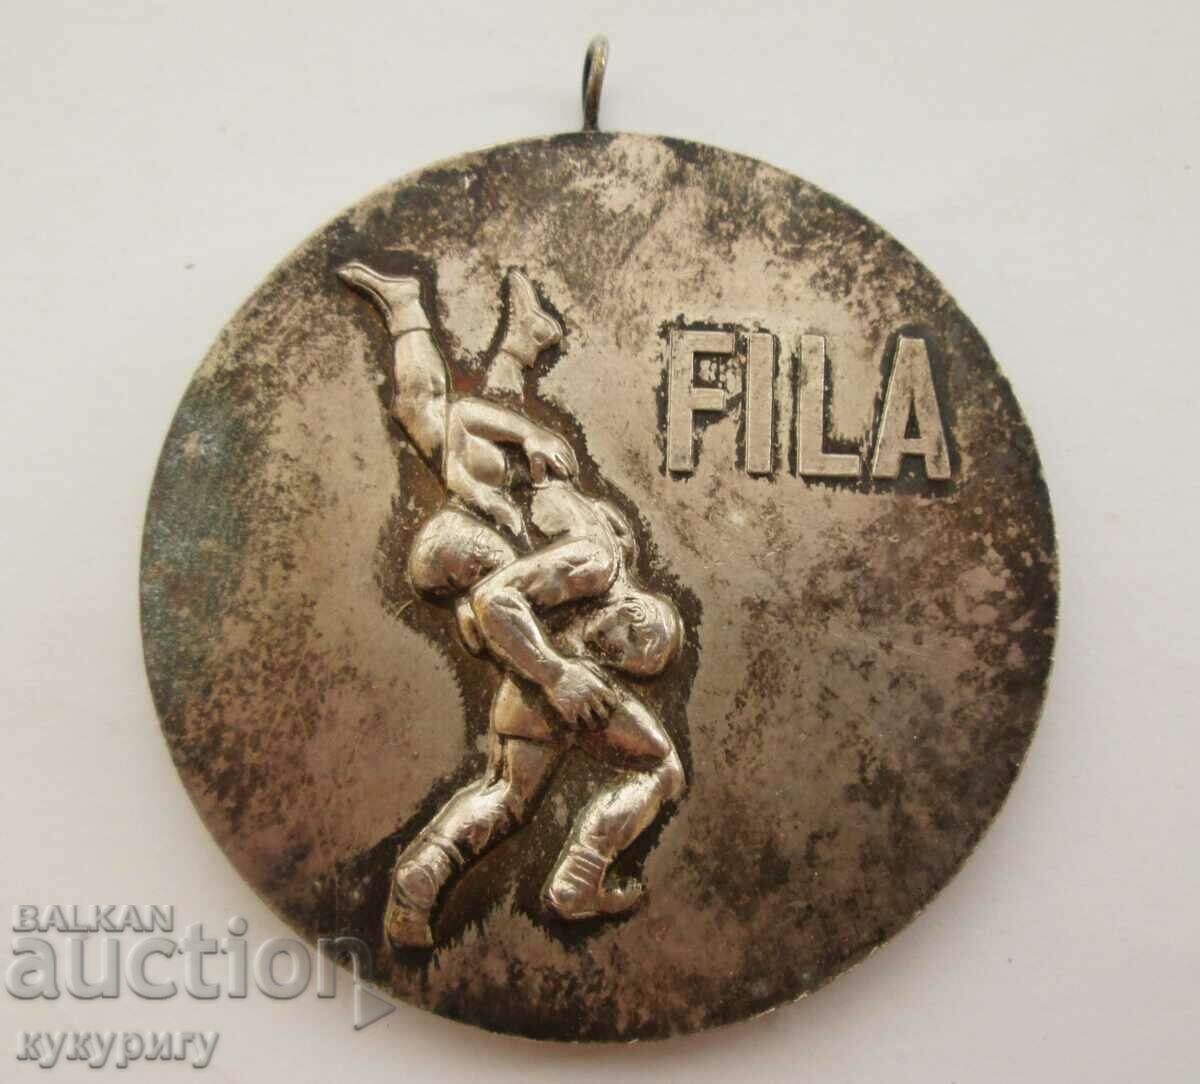 Παλιό αθλητικό μετάλλιο πάλης FILA τουρνουά Nikola Petrov 1973.